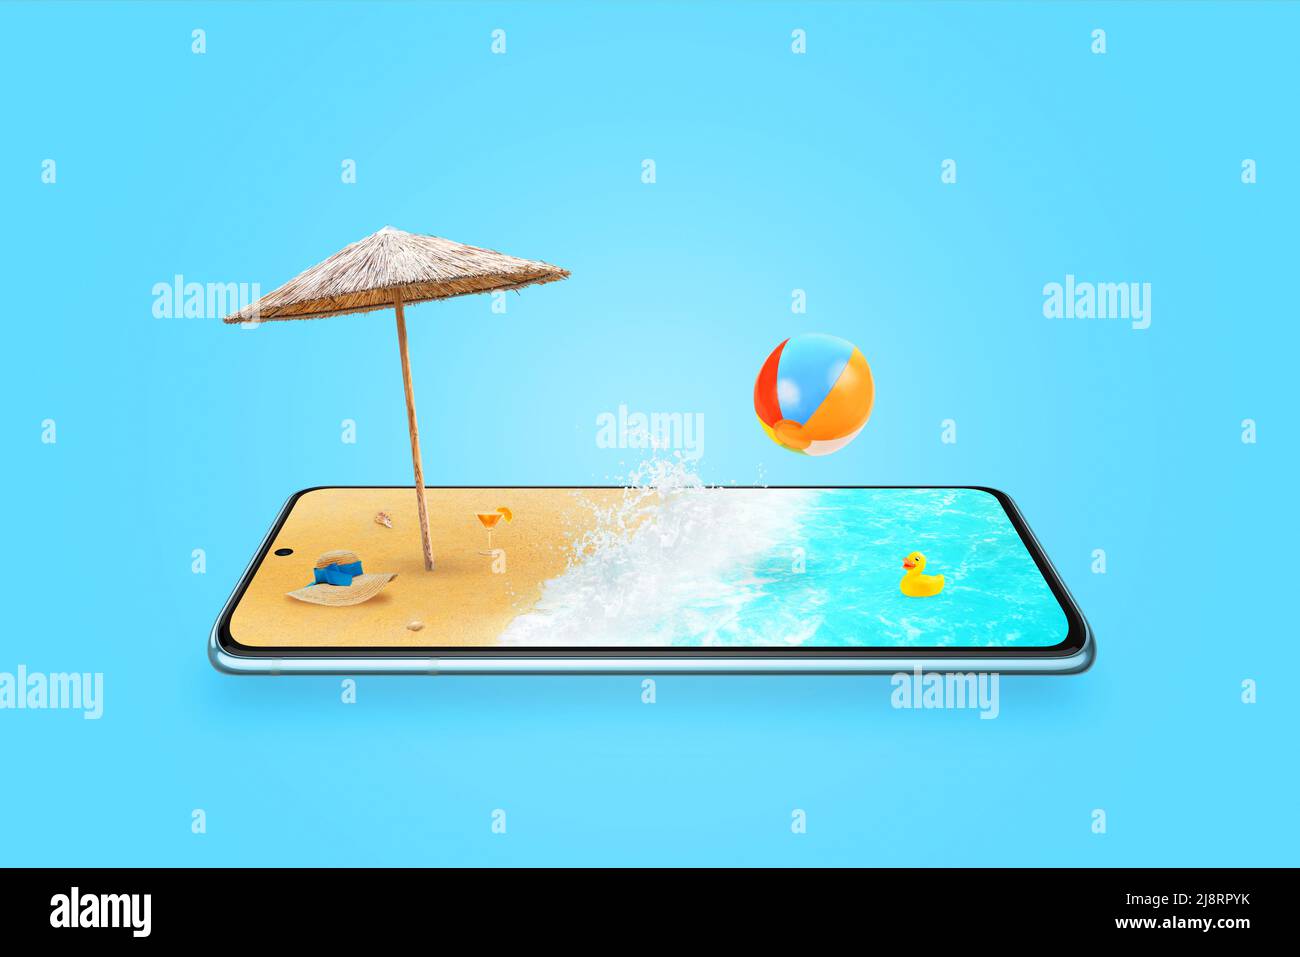 Concetto di spiaggia sullo schermo del telefono cellulare. Composizione vacanza viaggio estate con onde di mare, ombrellone, cappello. Telefono posizionato orizzontalmente Foto Stock